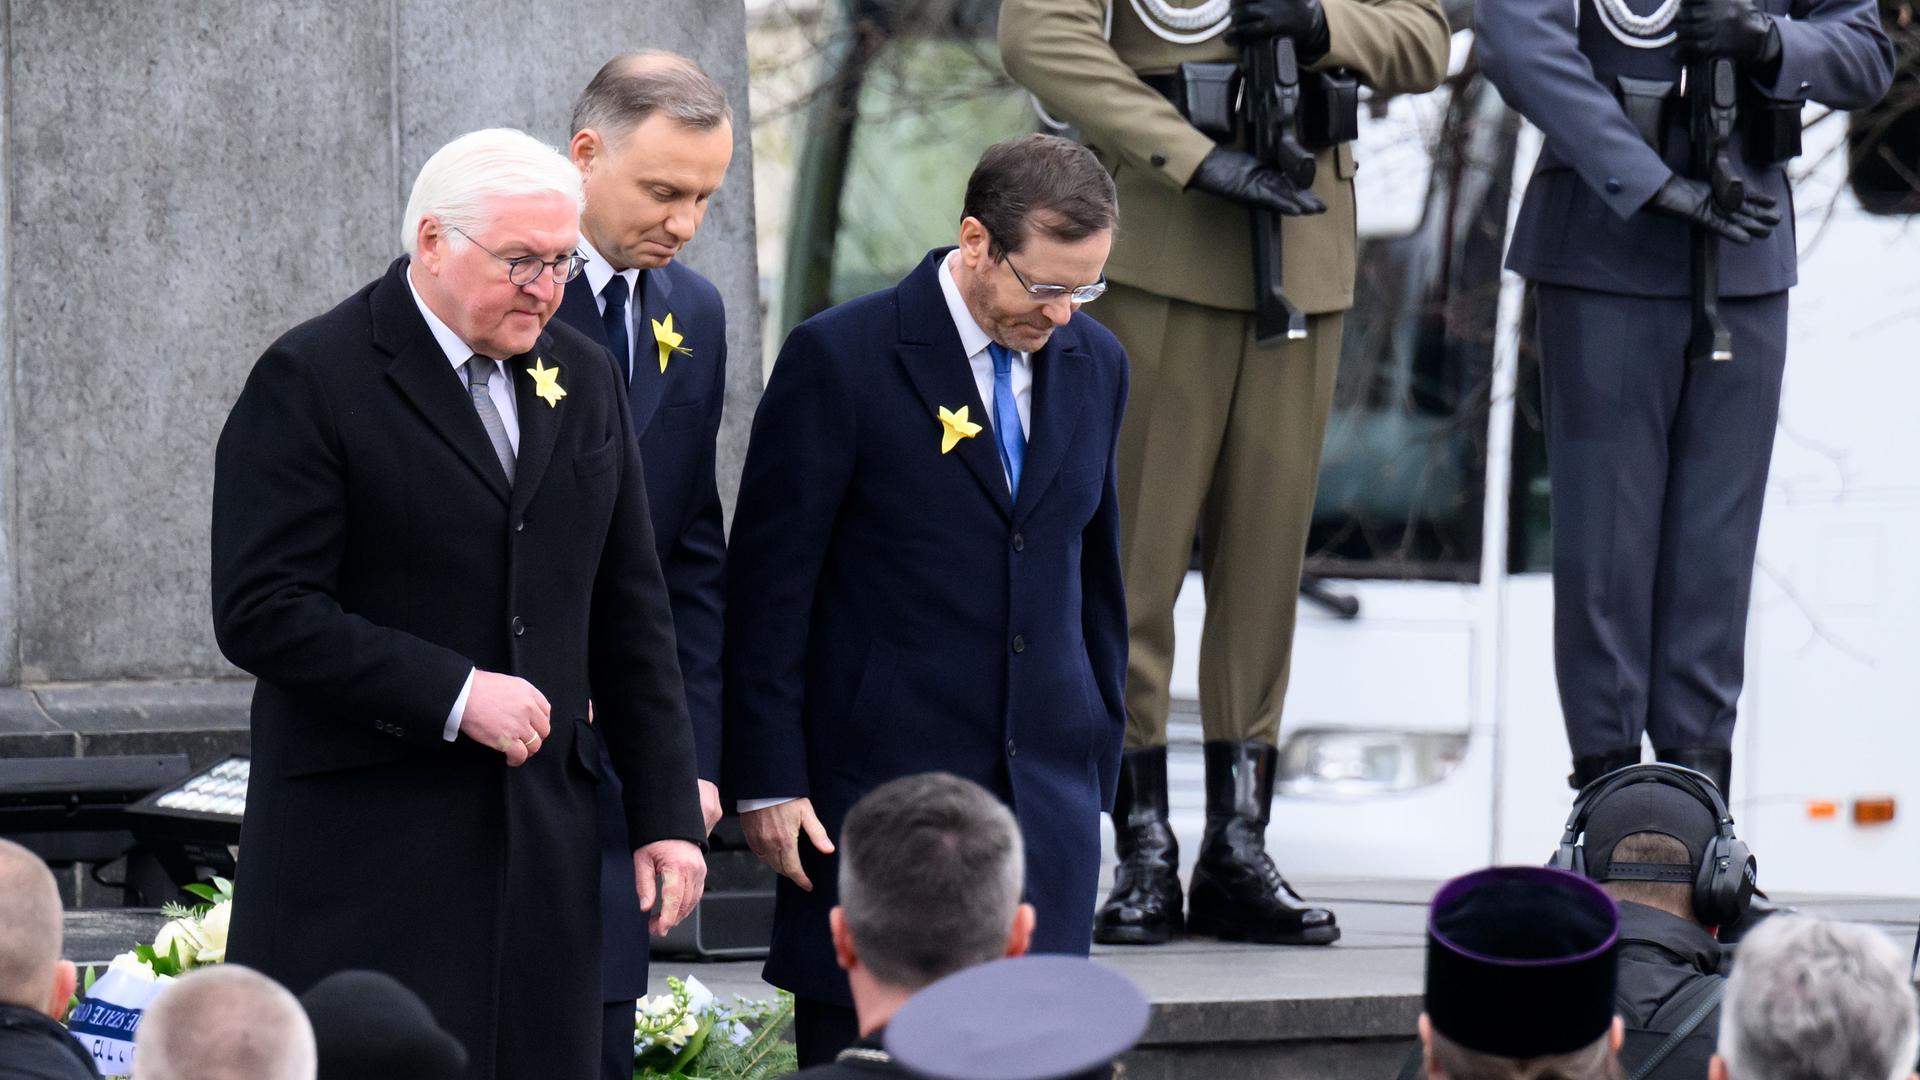 Gedenk-Feier in der Stadt Warschau in dem Land Polen: Bundespräsident Frank-Walter Steinmeier (links) steht neben Izchak Herzog (Präsident von dem Land Israel) und Andrzej Duda (Präsident von dem Land Polen). Sie verneigen sich.